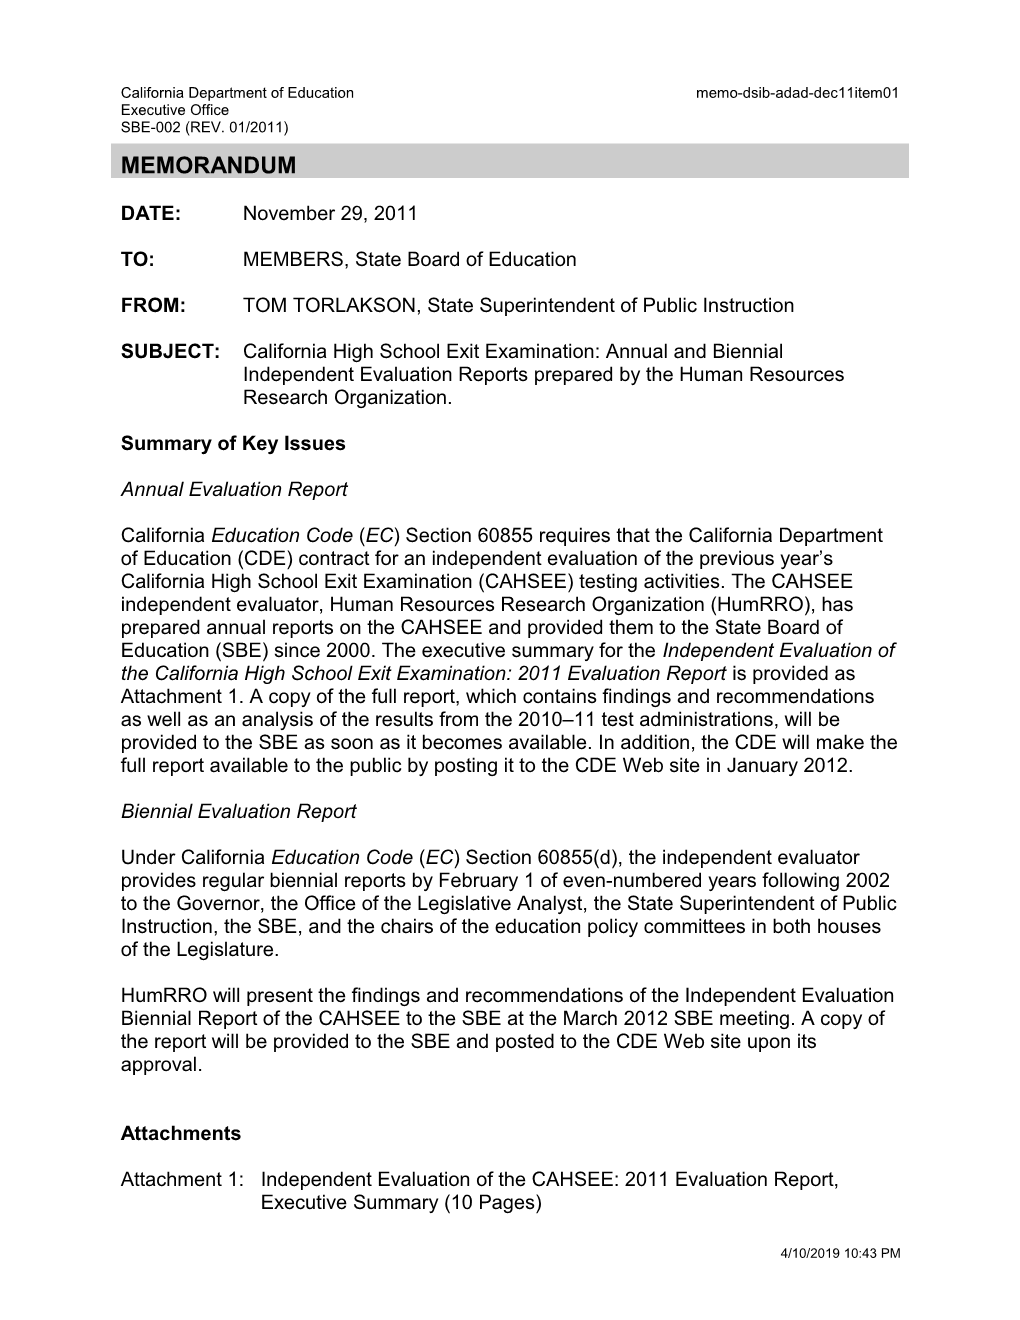 December 2011 Memorandum ADA Item 1 - Information Memorandum (CA State Board of Education)